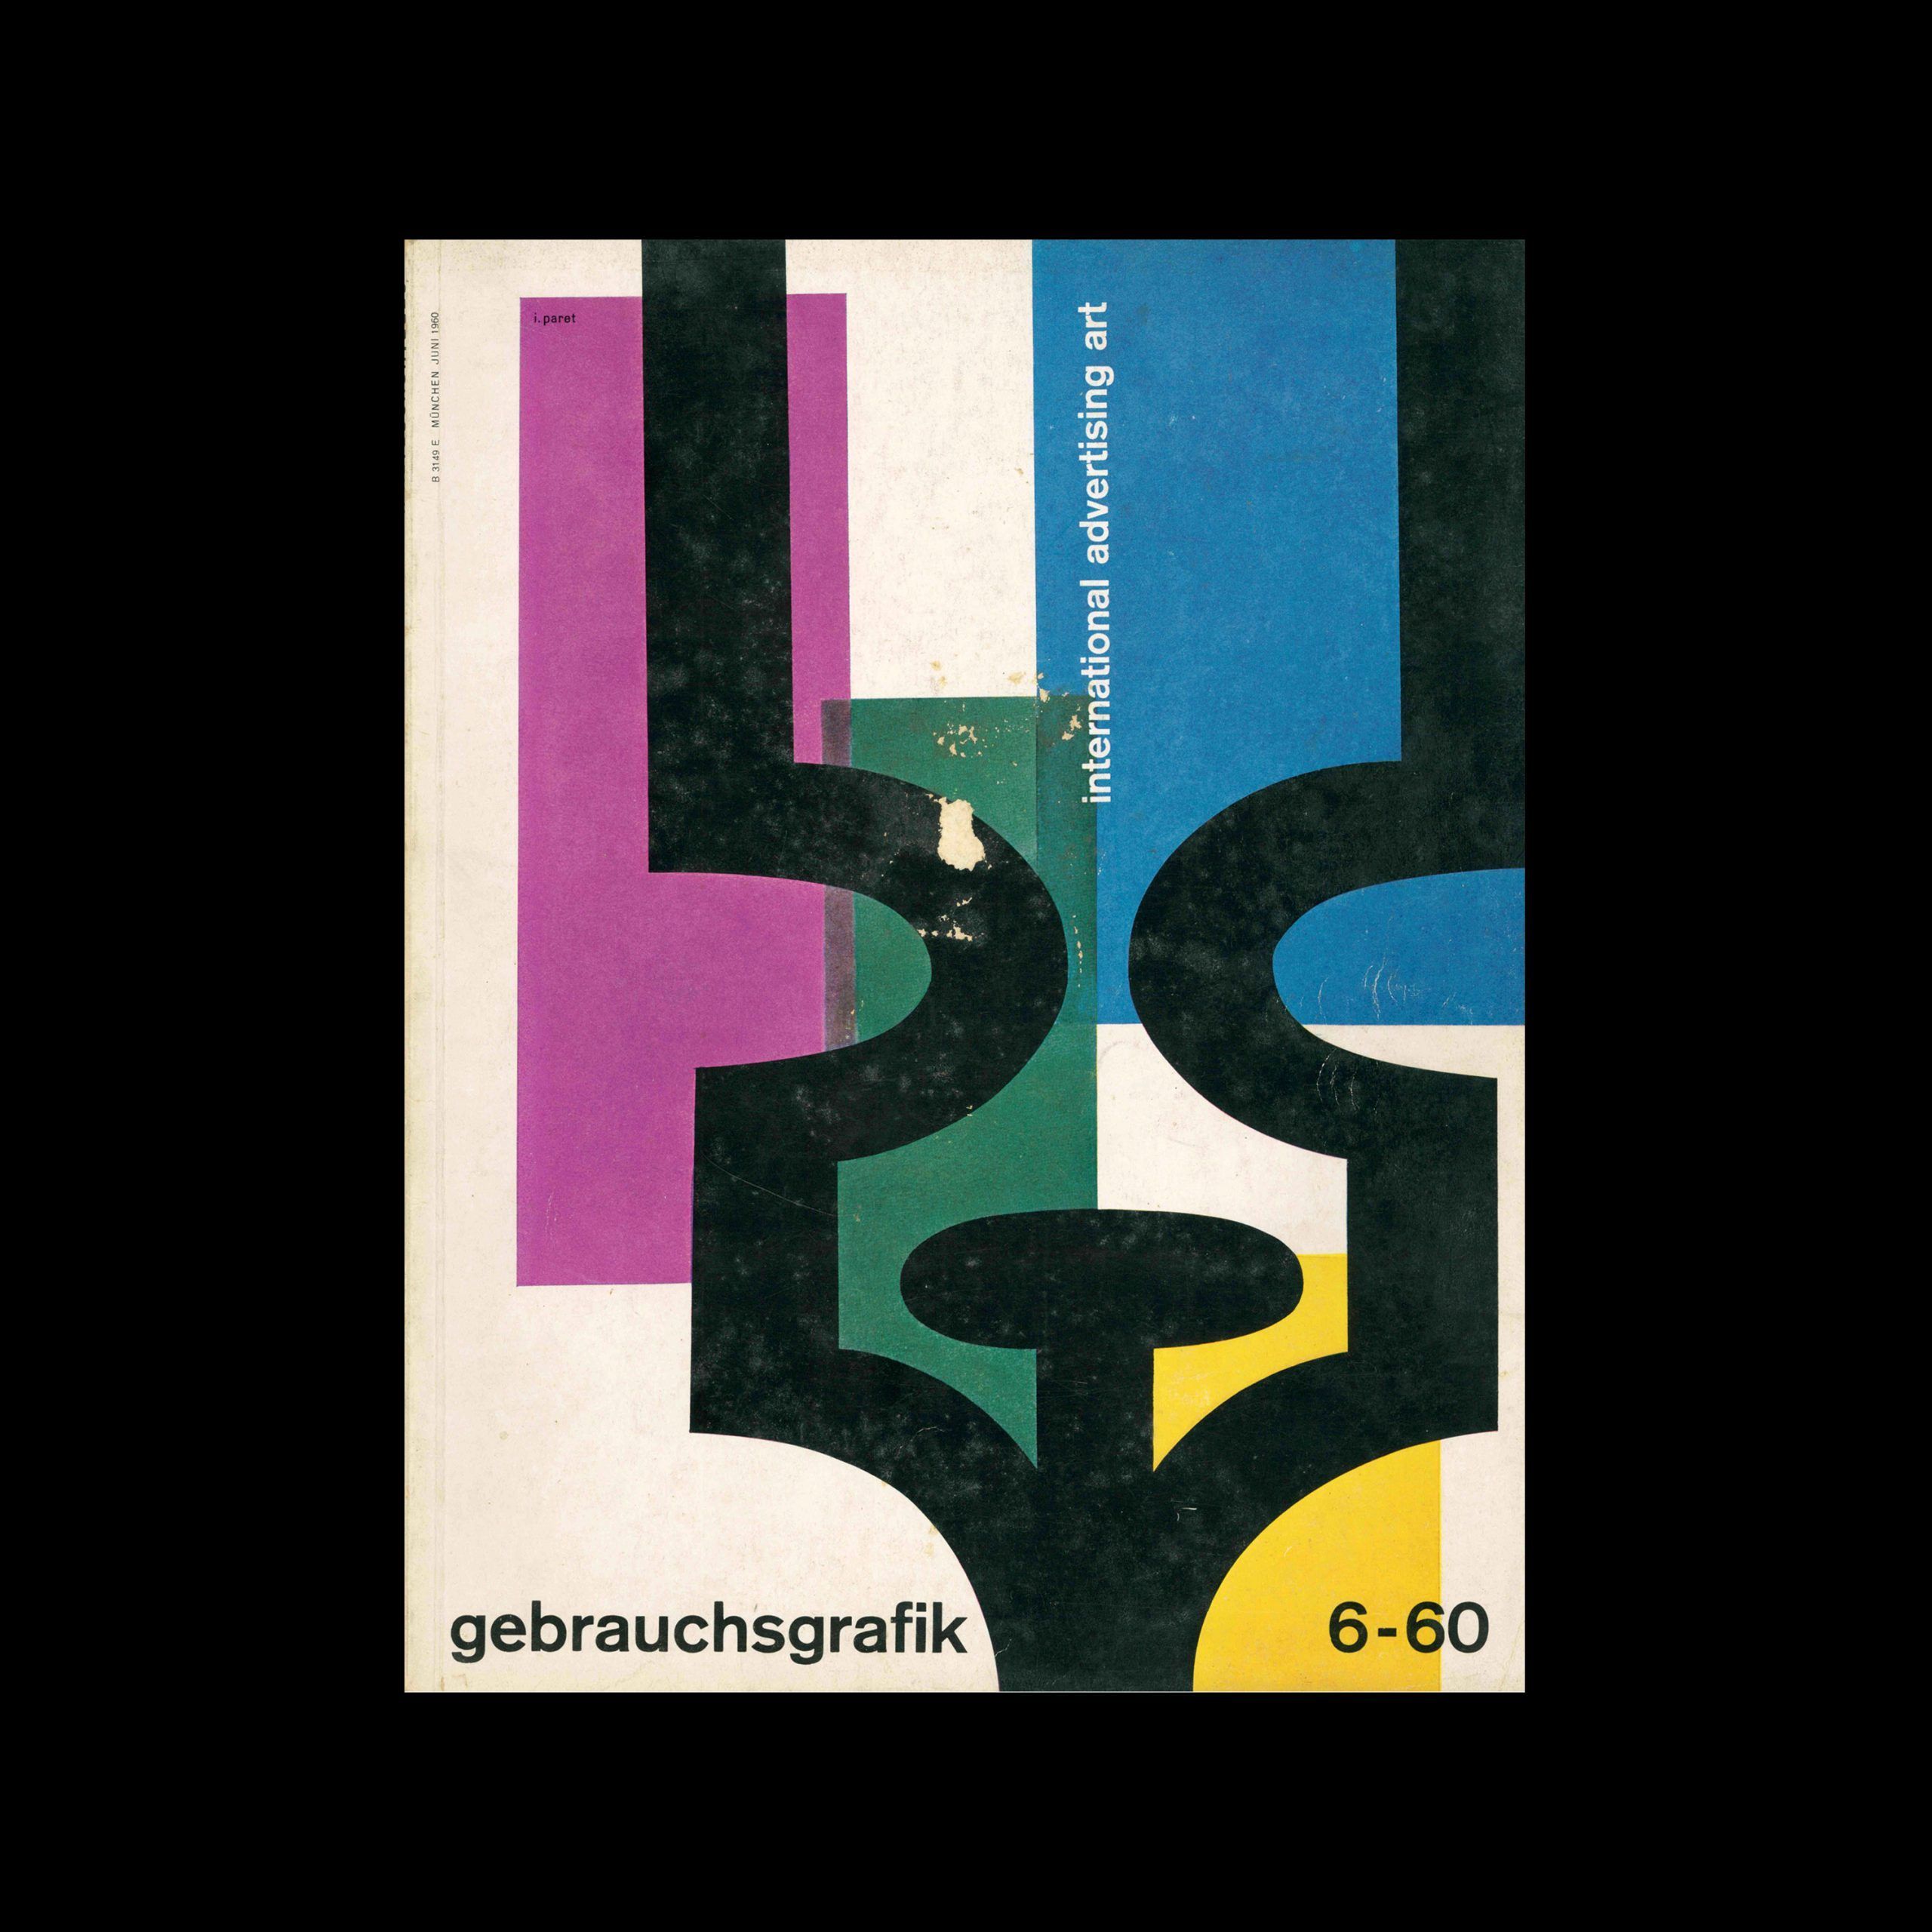 Gebrauchsgraphik, 6, 1960 designed by Paret